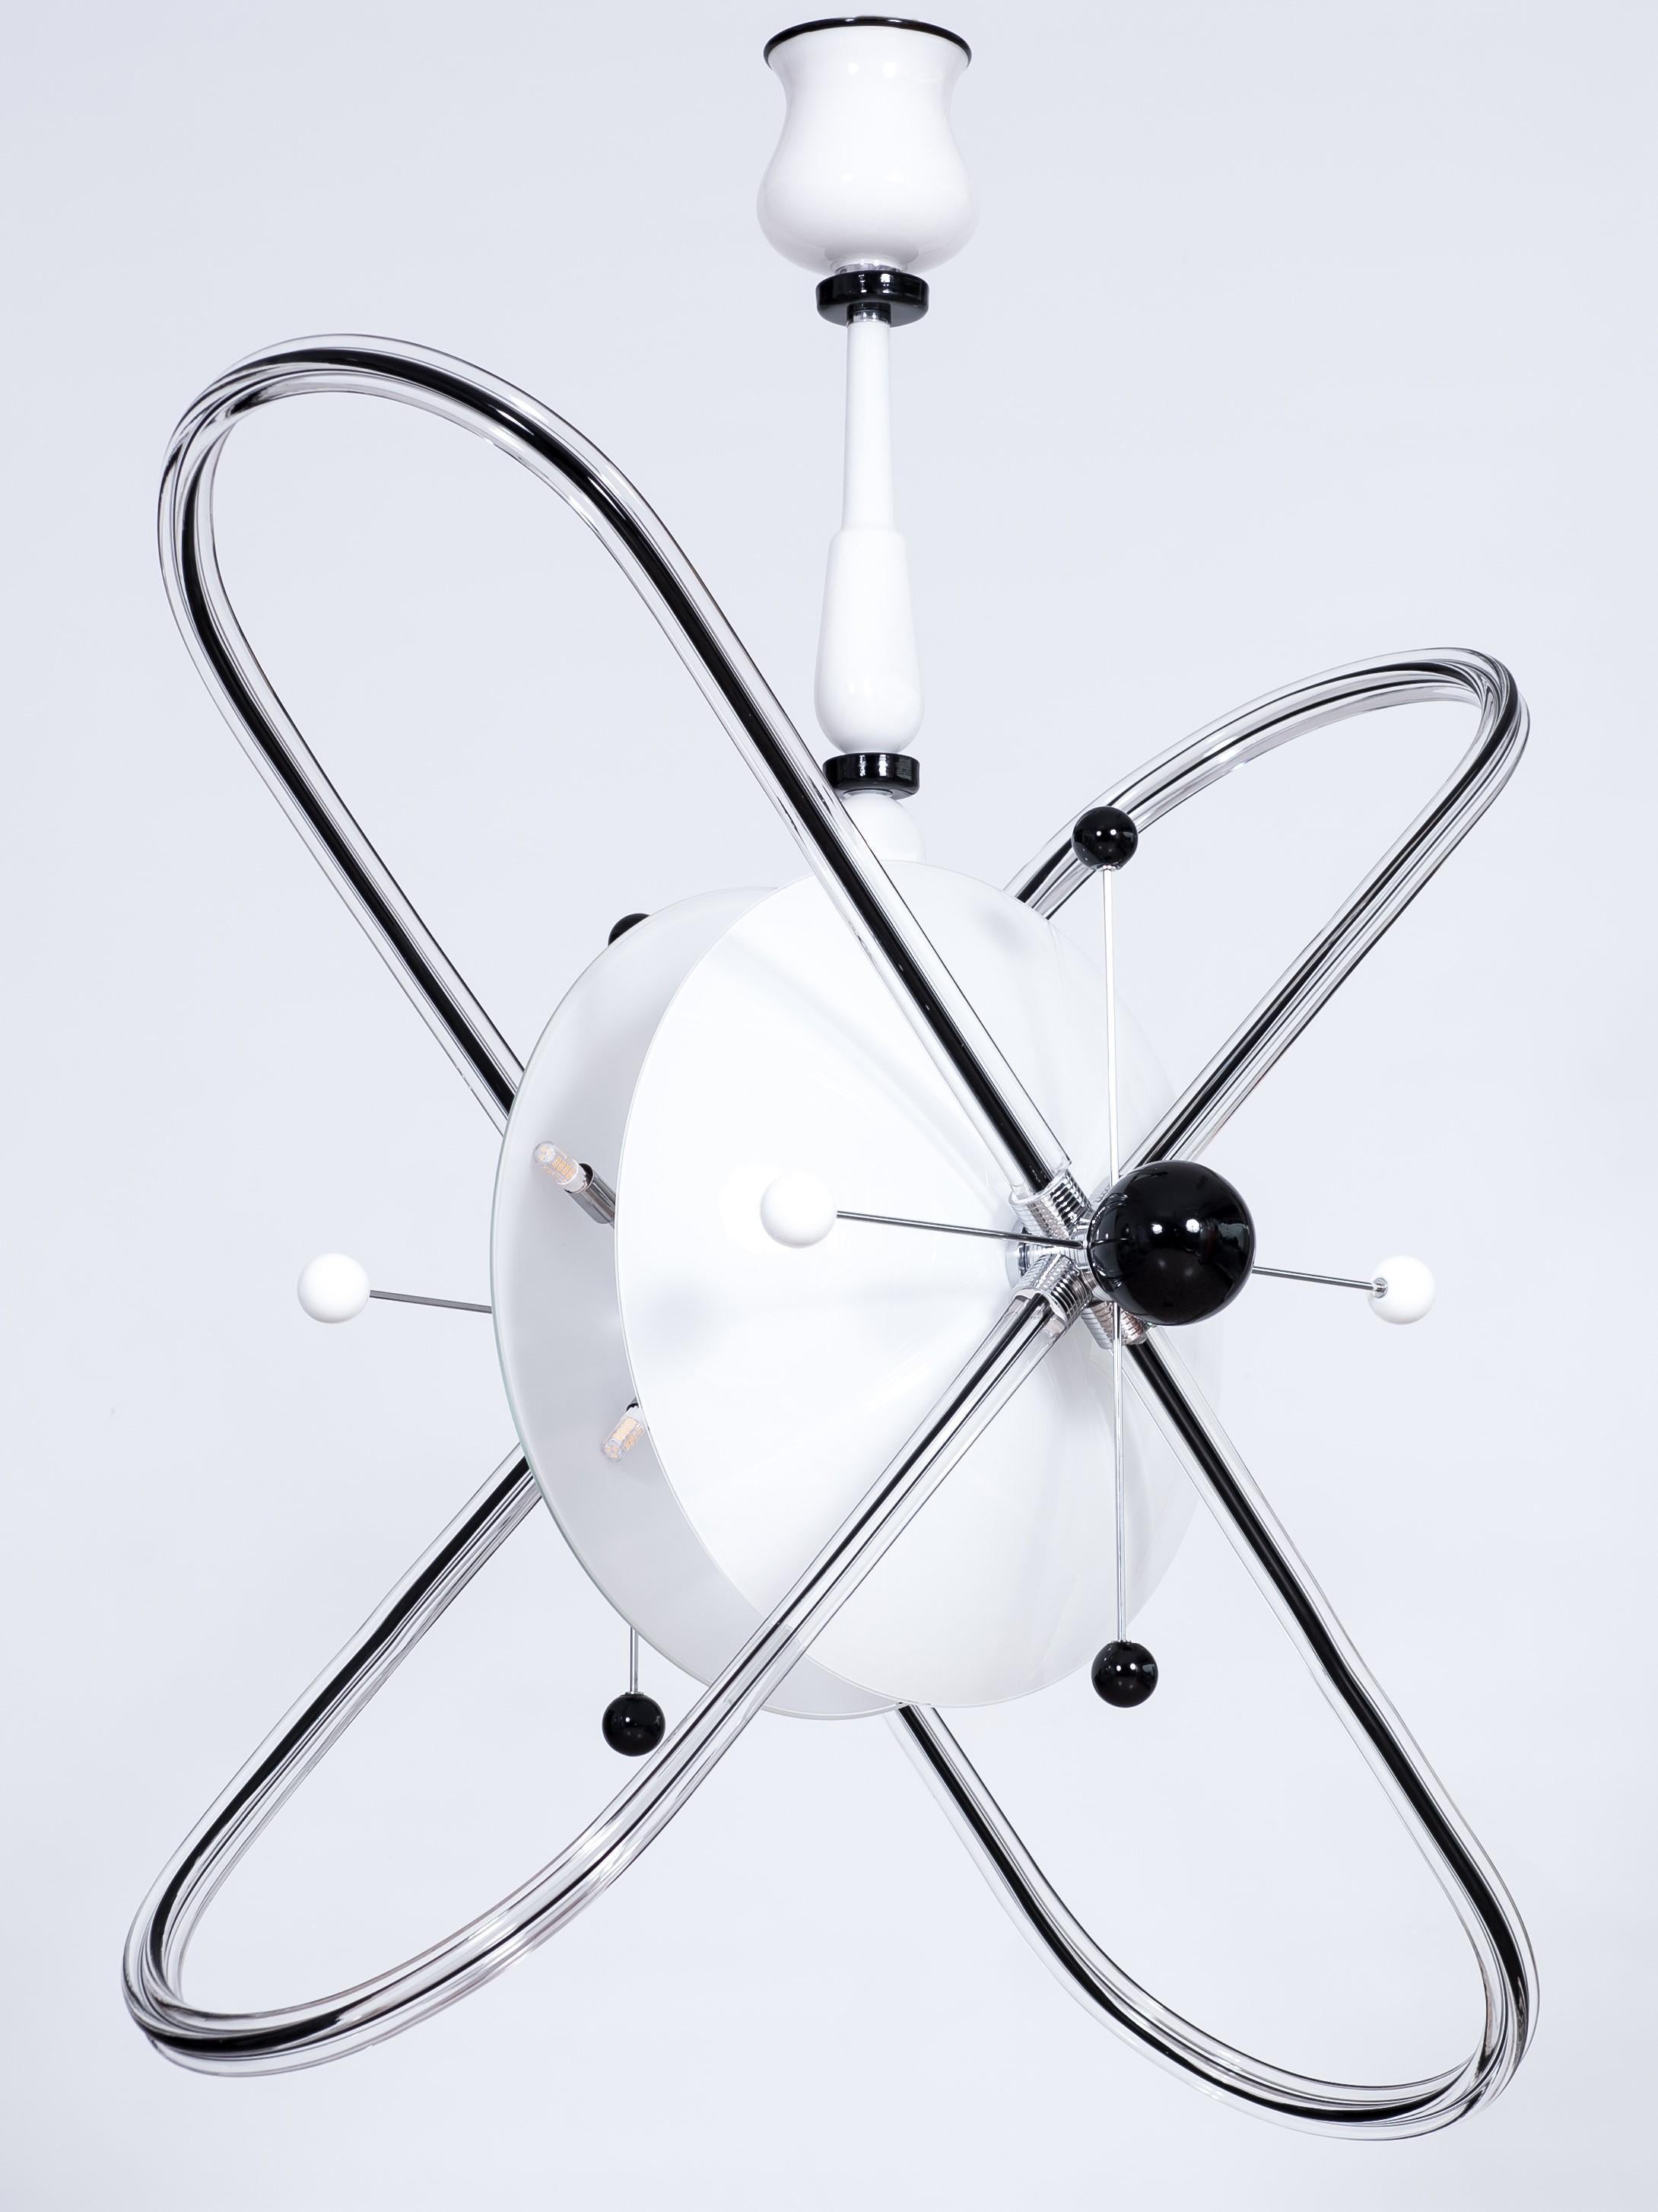 Chandelier Atom au design Contemporary en verre de Murano italien noir et blanc

Entièrement réalisé à la main en verre soufflé de Murano et en acier, ce lustre est une production en édition limitée de l'artiste et designer italien Giovanni Dalla